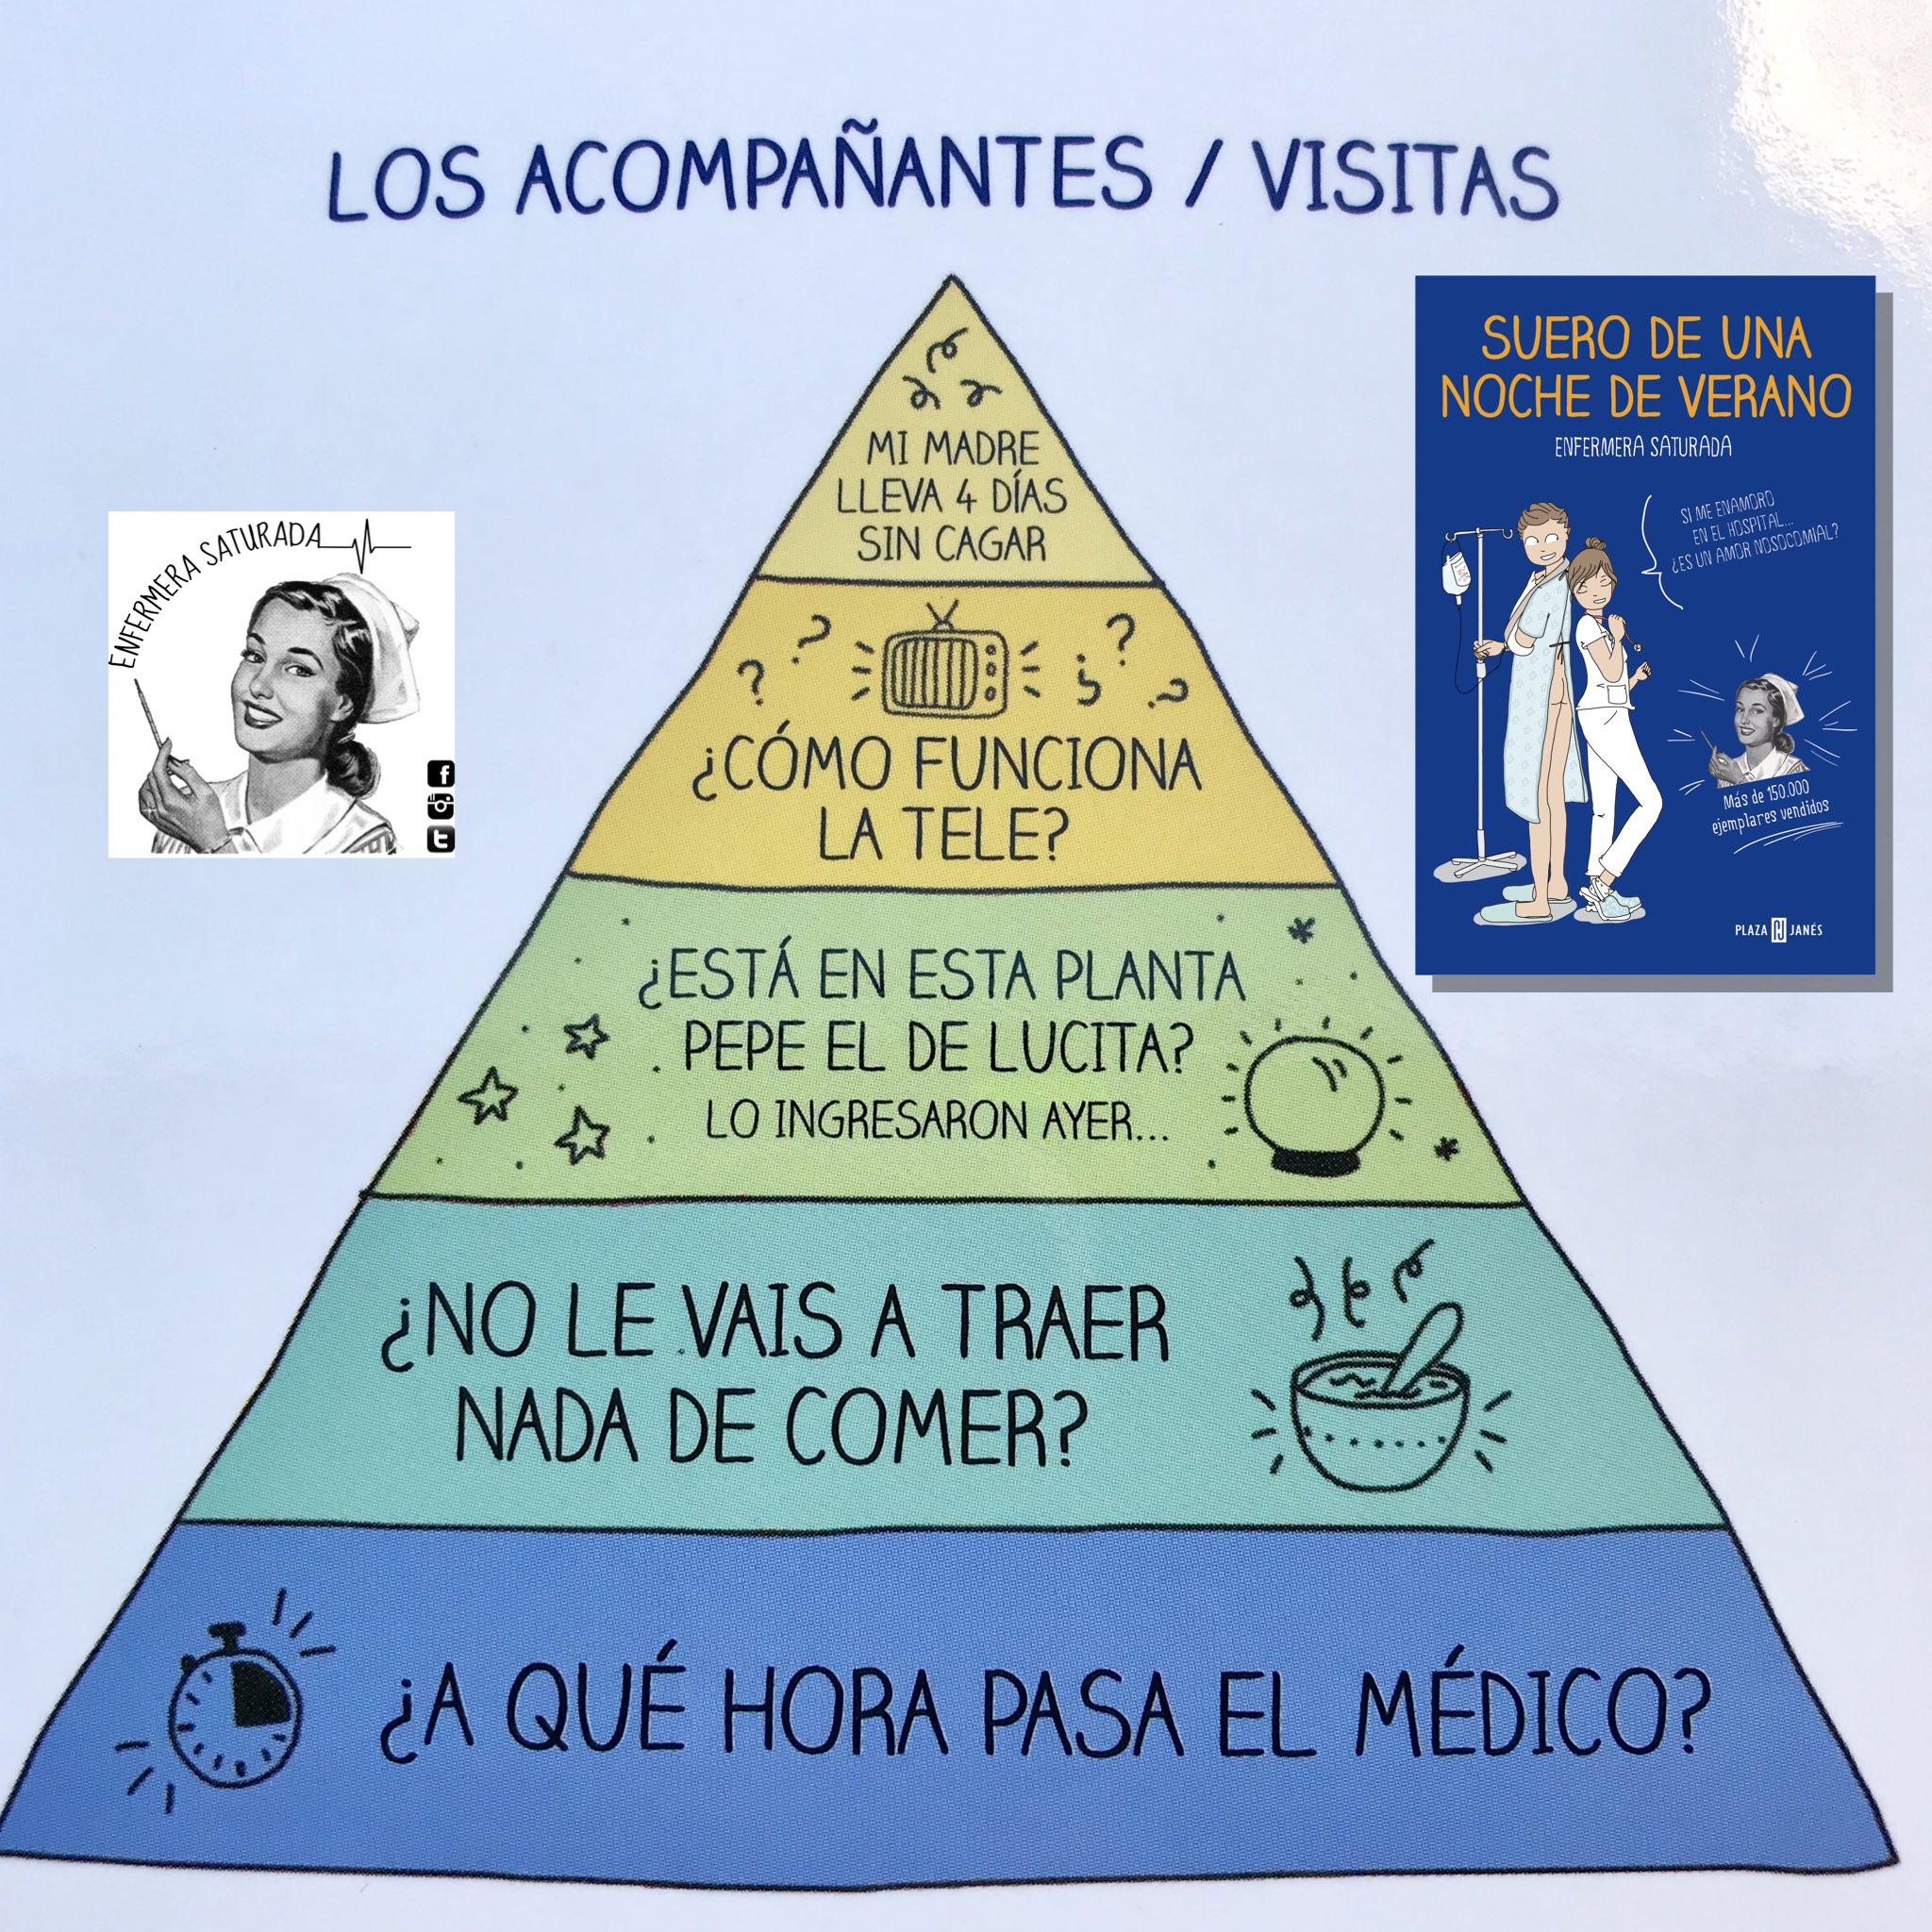 Enfermera Saturada 🫀 on X: Hoy es el #DíaMundialdelaTelevisión y eso es  algo que preocupa en los hospitales (Imagen: Pirámide de Maslow de los  Acompañantes de los pacientes, de #SueroDeUnaNocheDeVerano)   /